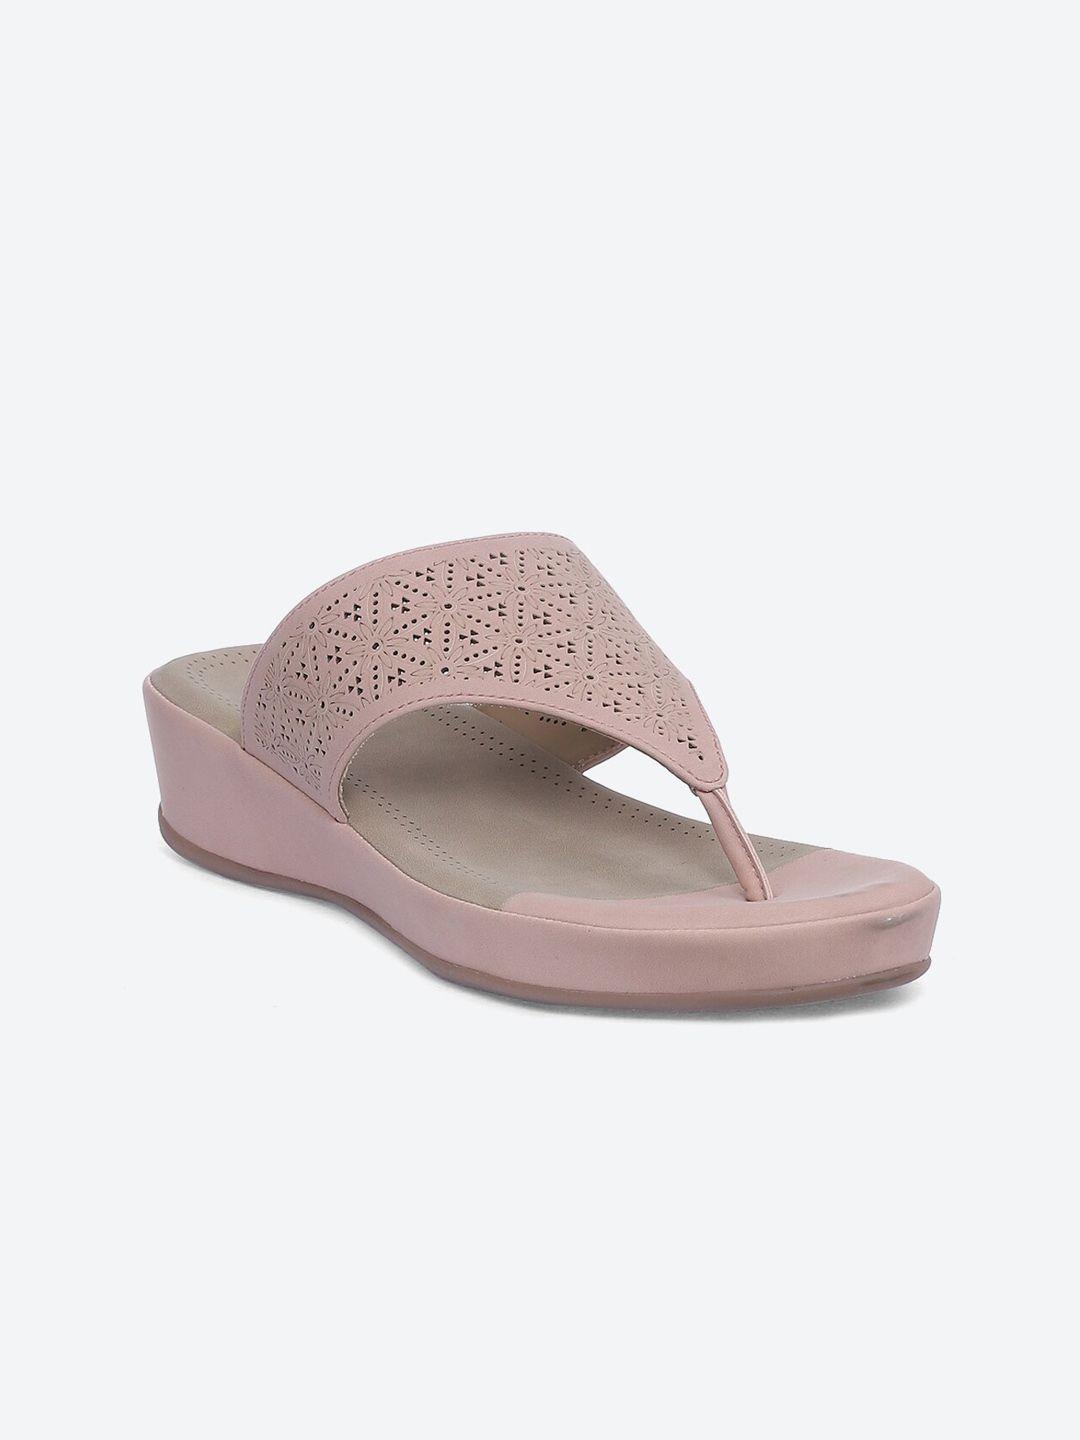 biba women pink textured open toe flats with laser cuts